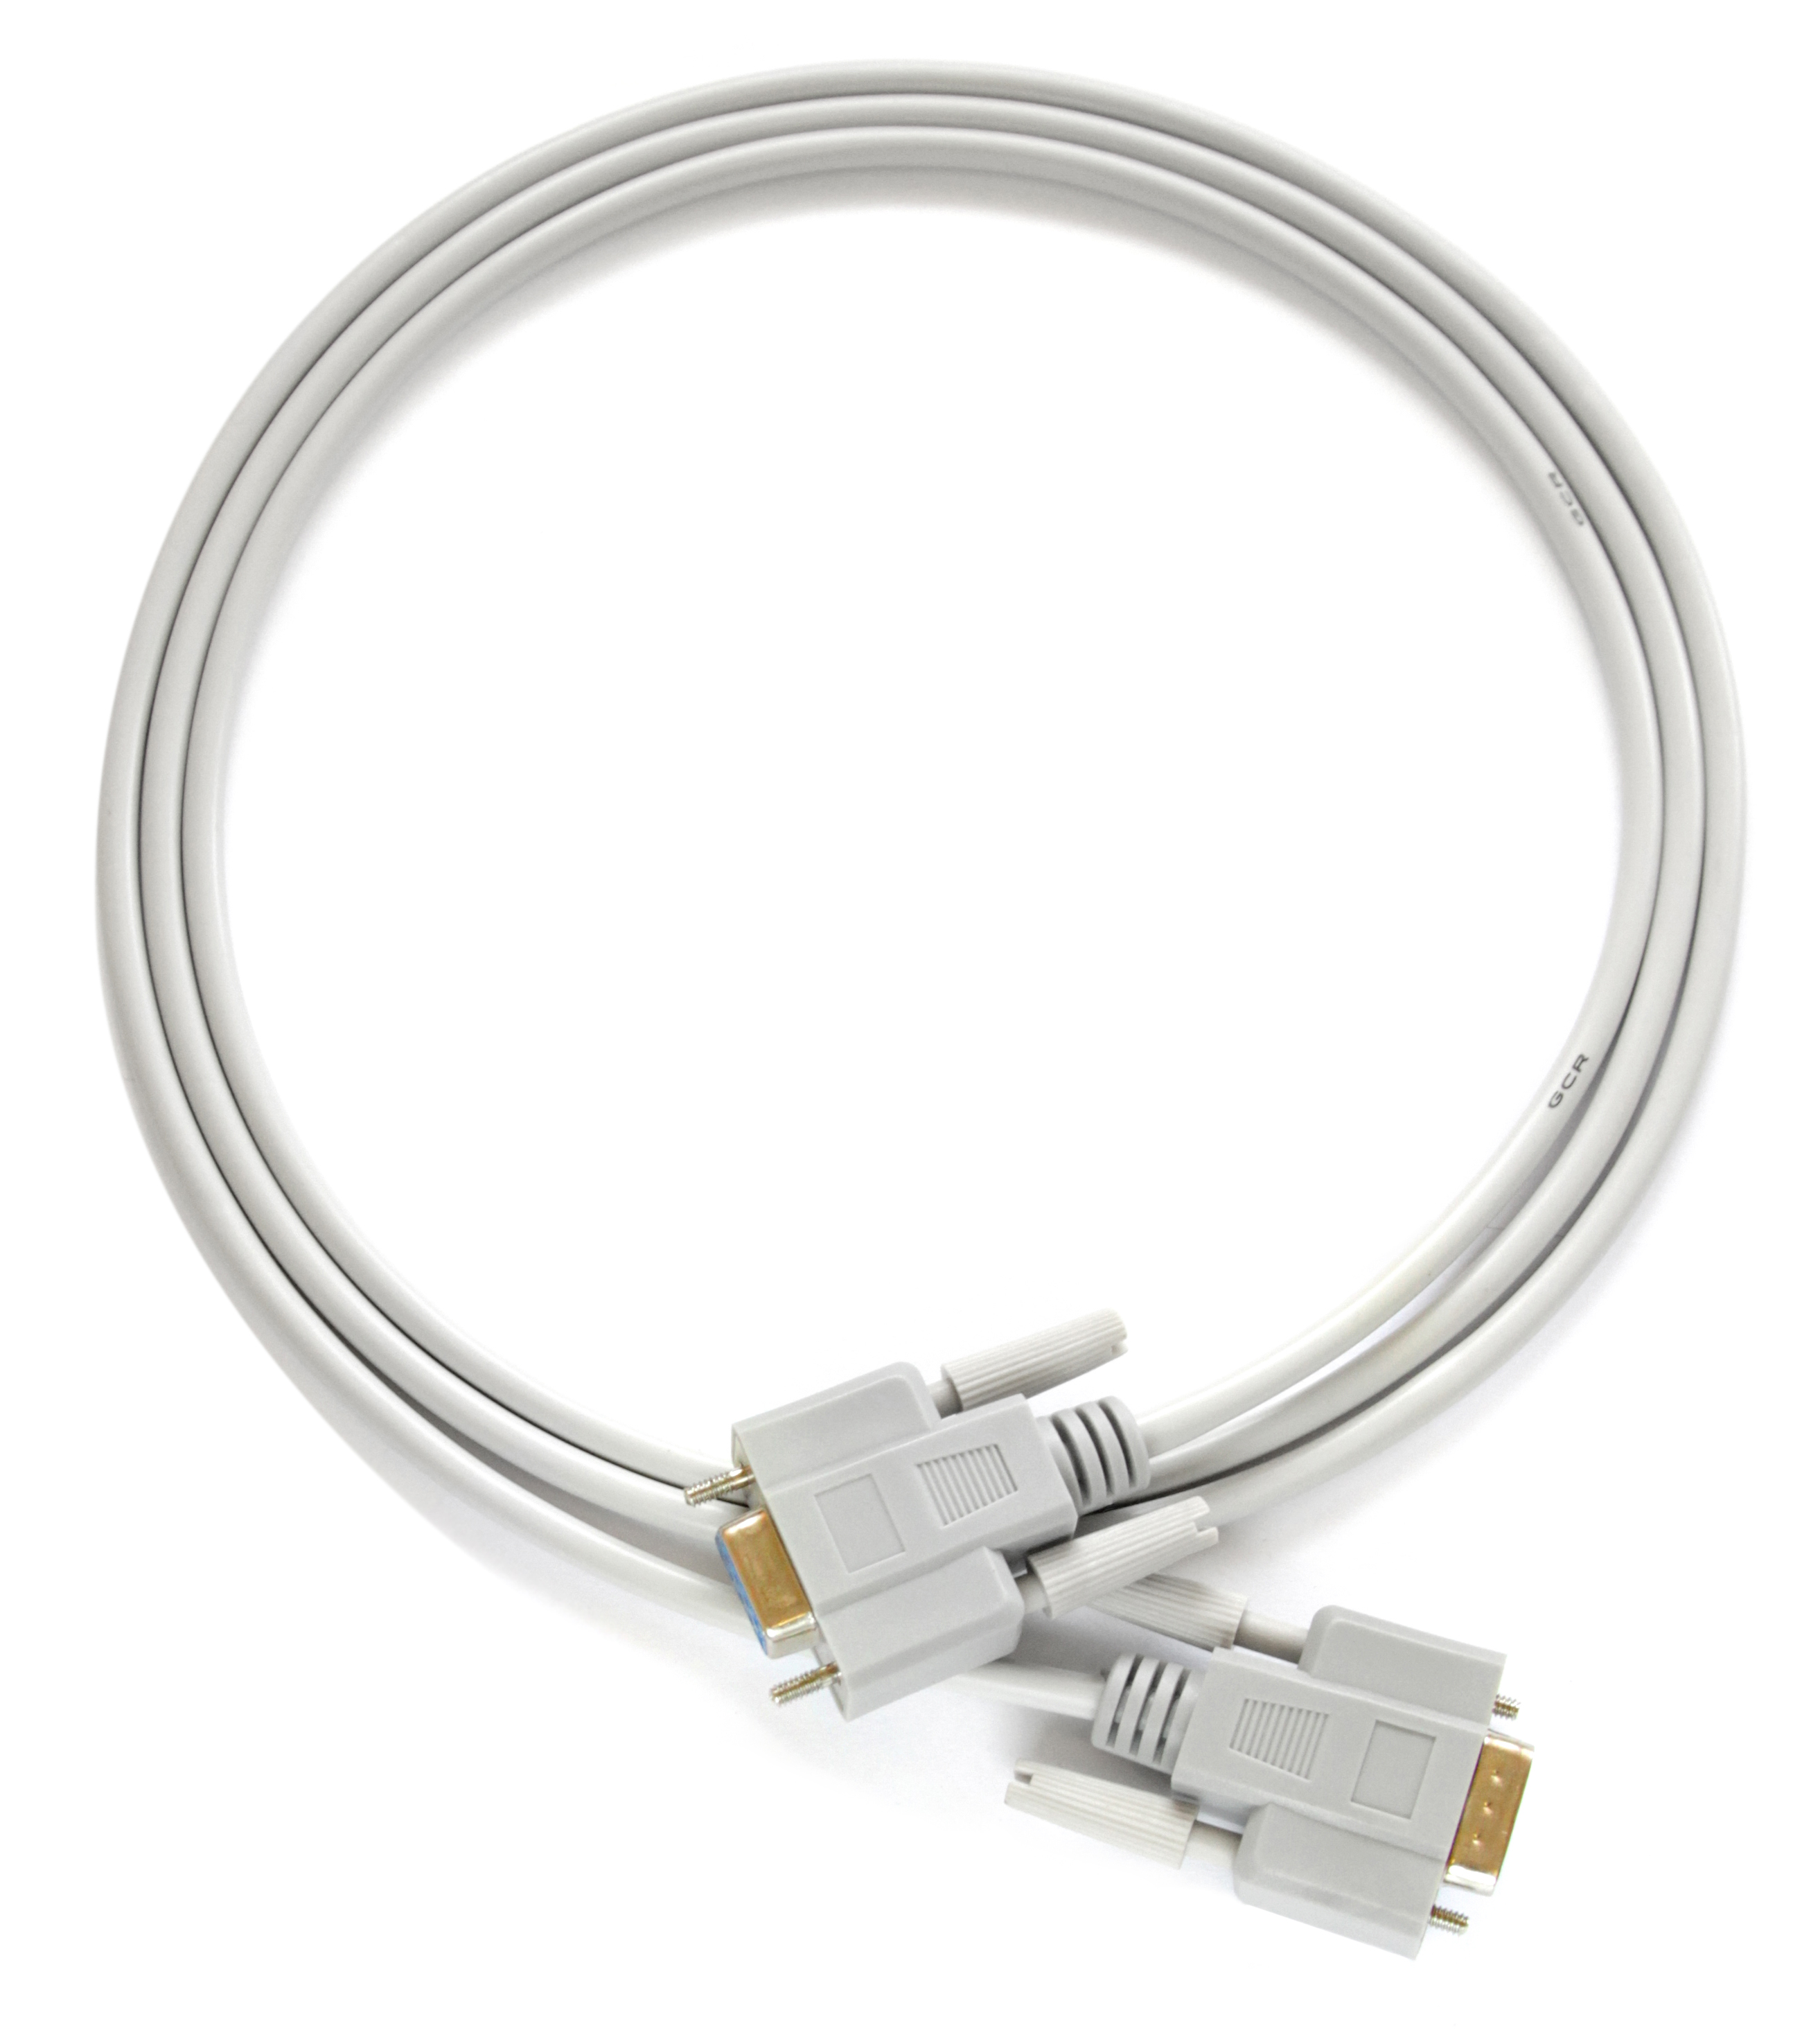 Нуль модемный кабель RS-232 COM DB9M/DB9M для компьютера принтера